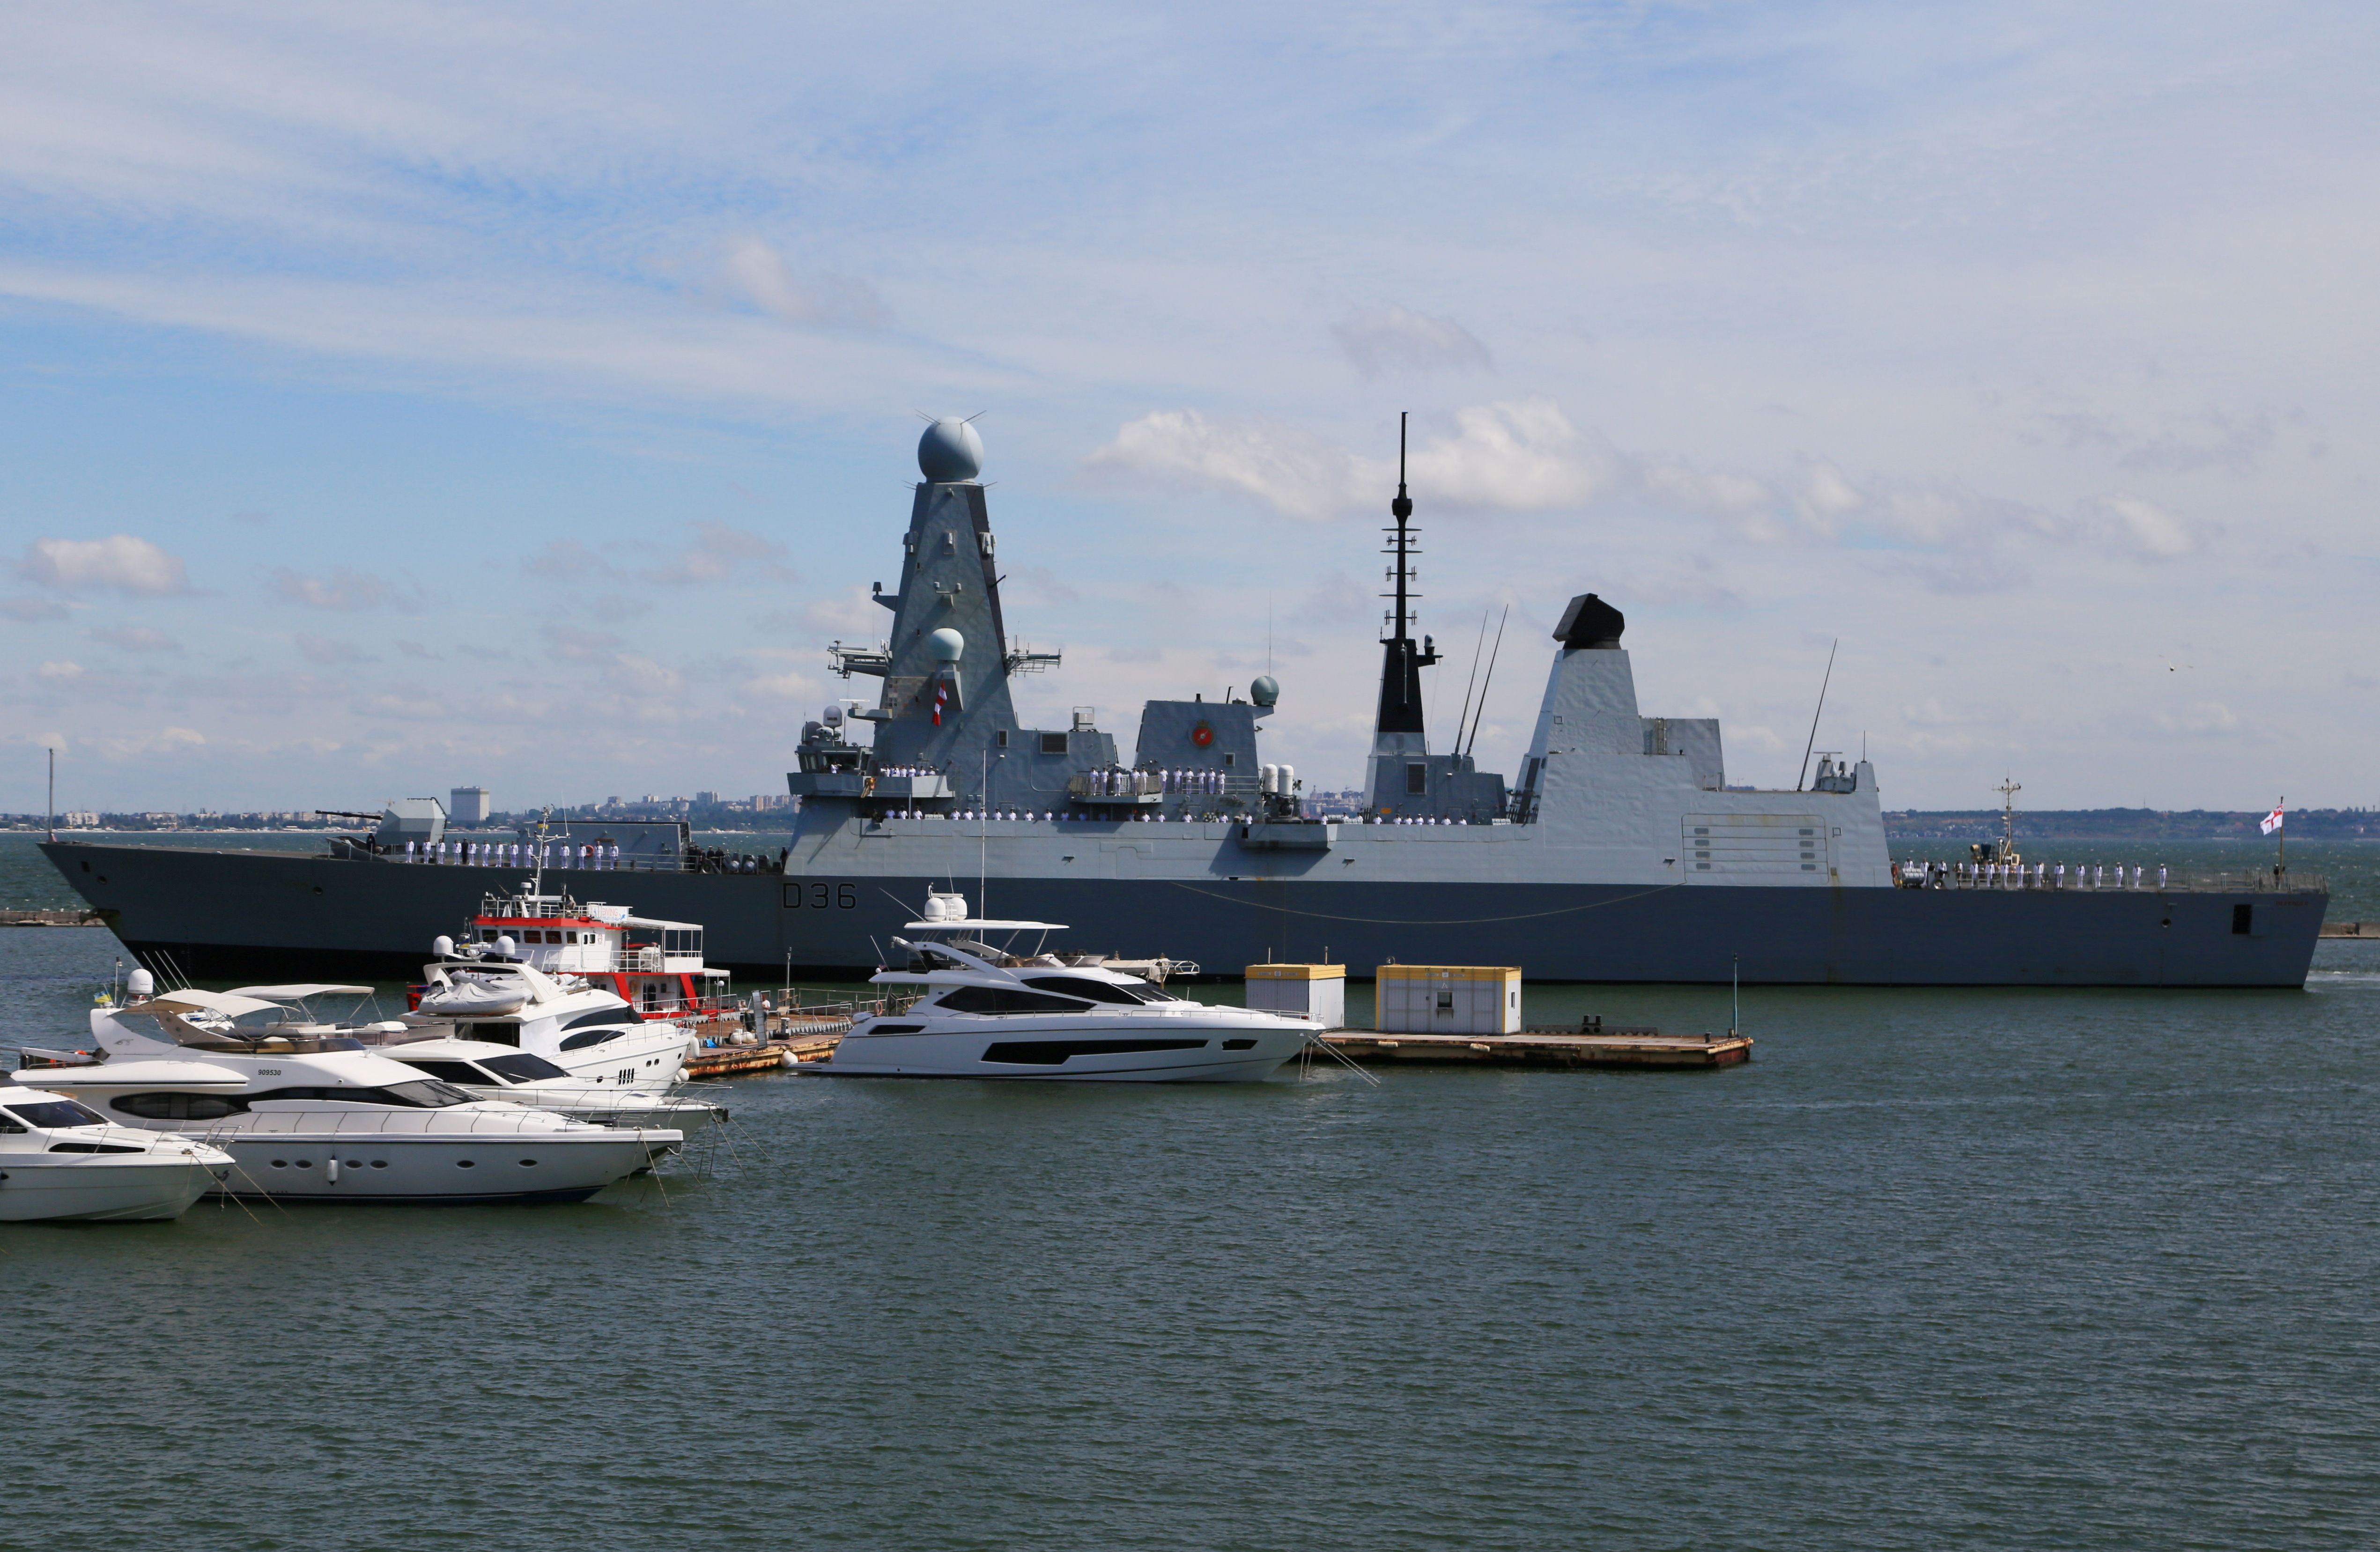 British Royal Navy's Type 45 destroyer HMS Defender arrives at the Black Sea port of Odessa